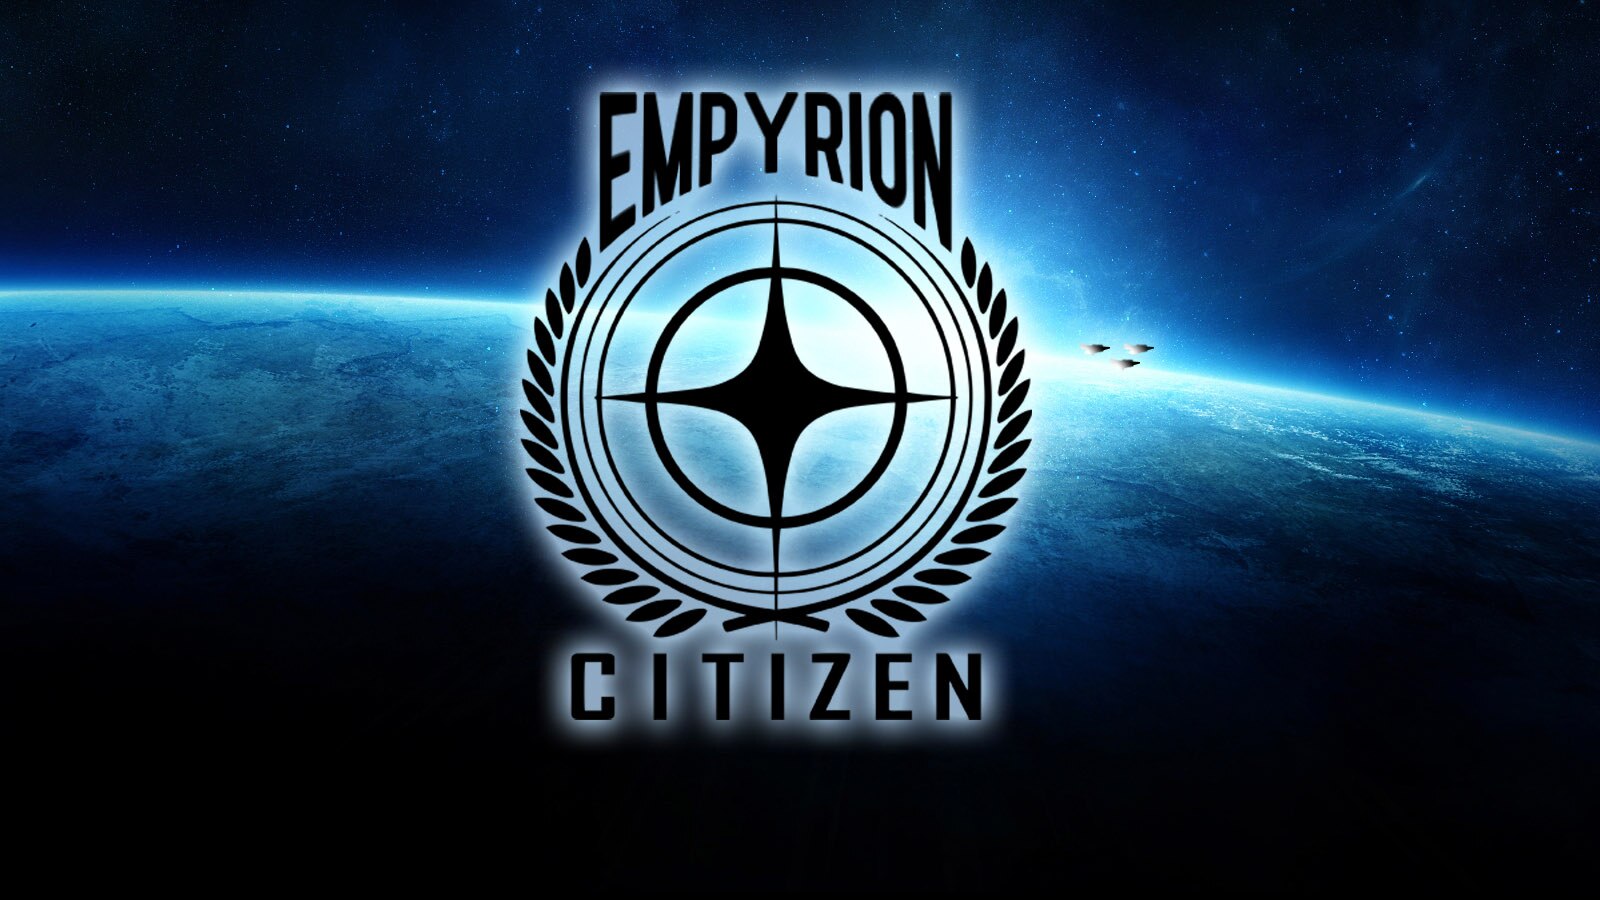 Star Citizen on Steam OS 